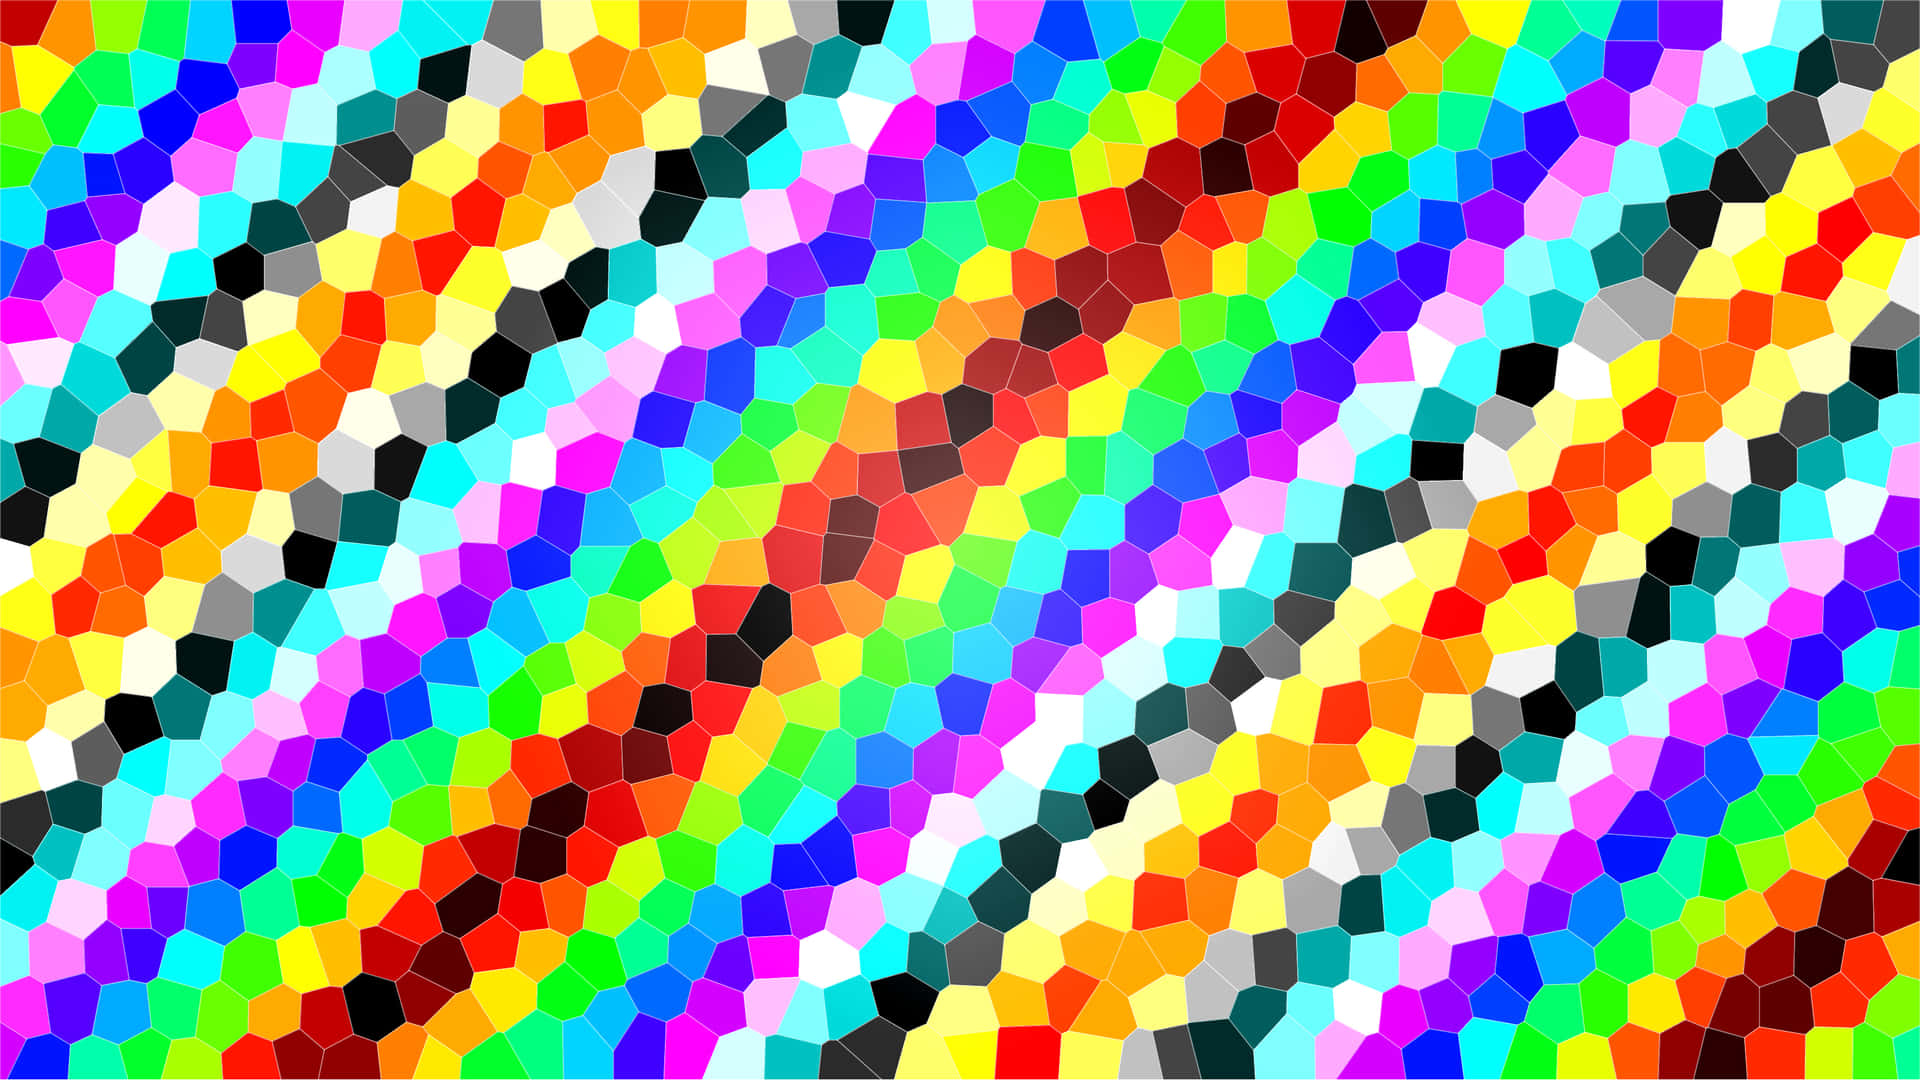 Einbuntes Hintergrundbild Mit Vielen Verschiedenen Farben Wallpaper